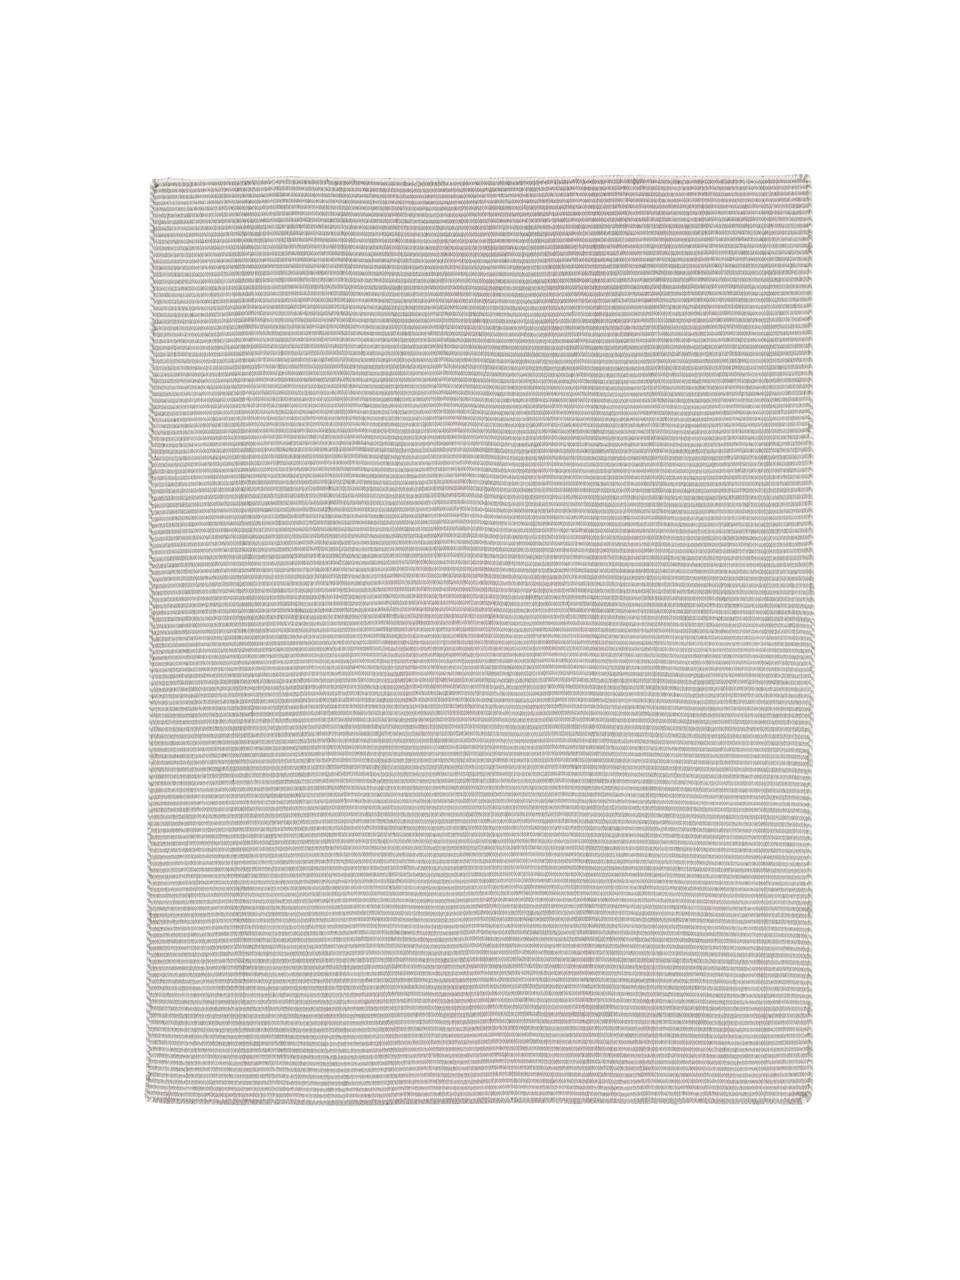 Fijn gestreepte wollen vloerkleed Ajo in grijs-crème kleur, handgeweven, Lichtgrijs, crèmekleurig, 140 x 200 cm